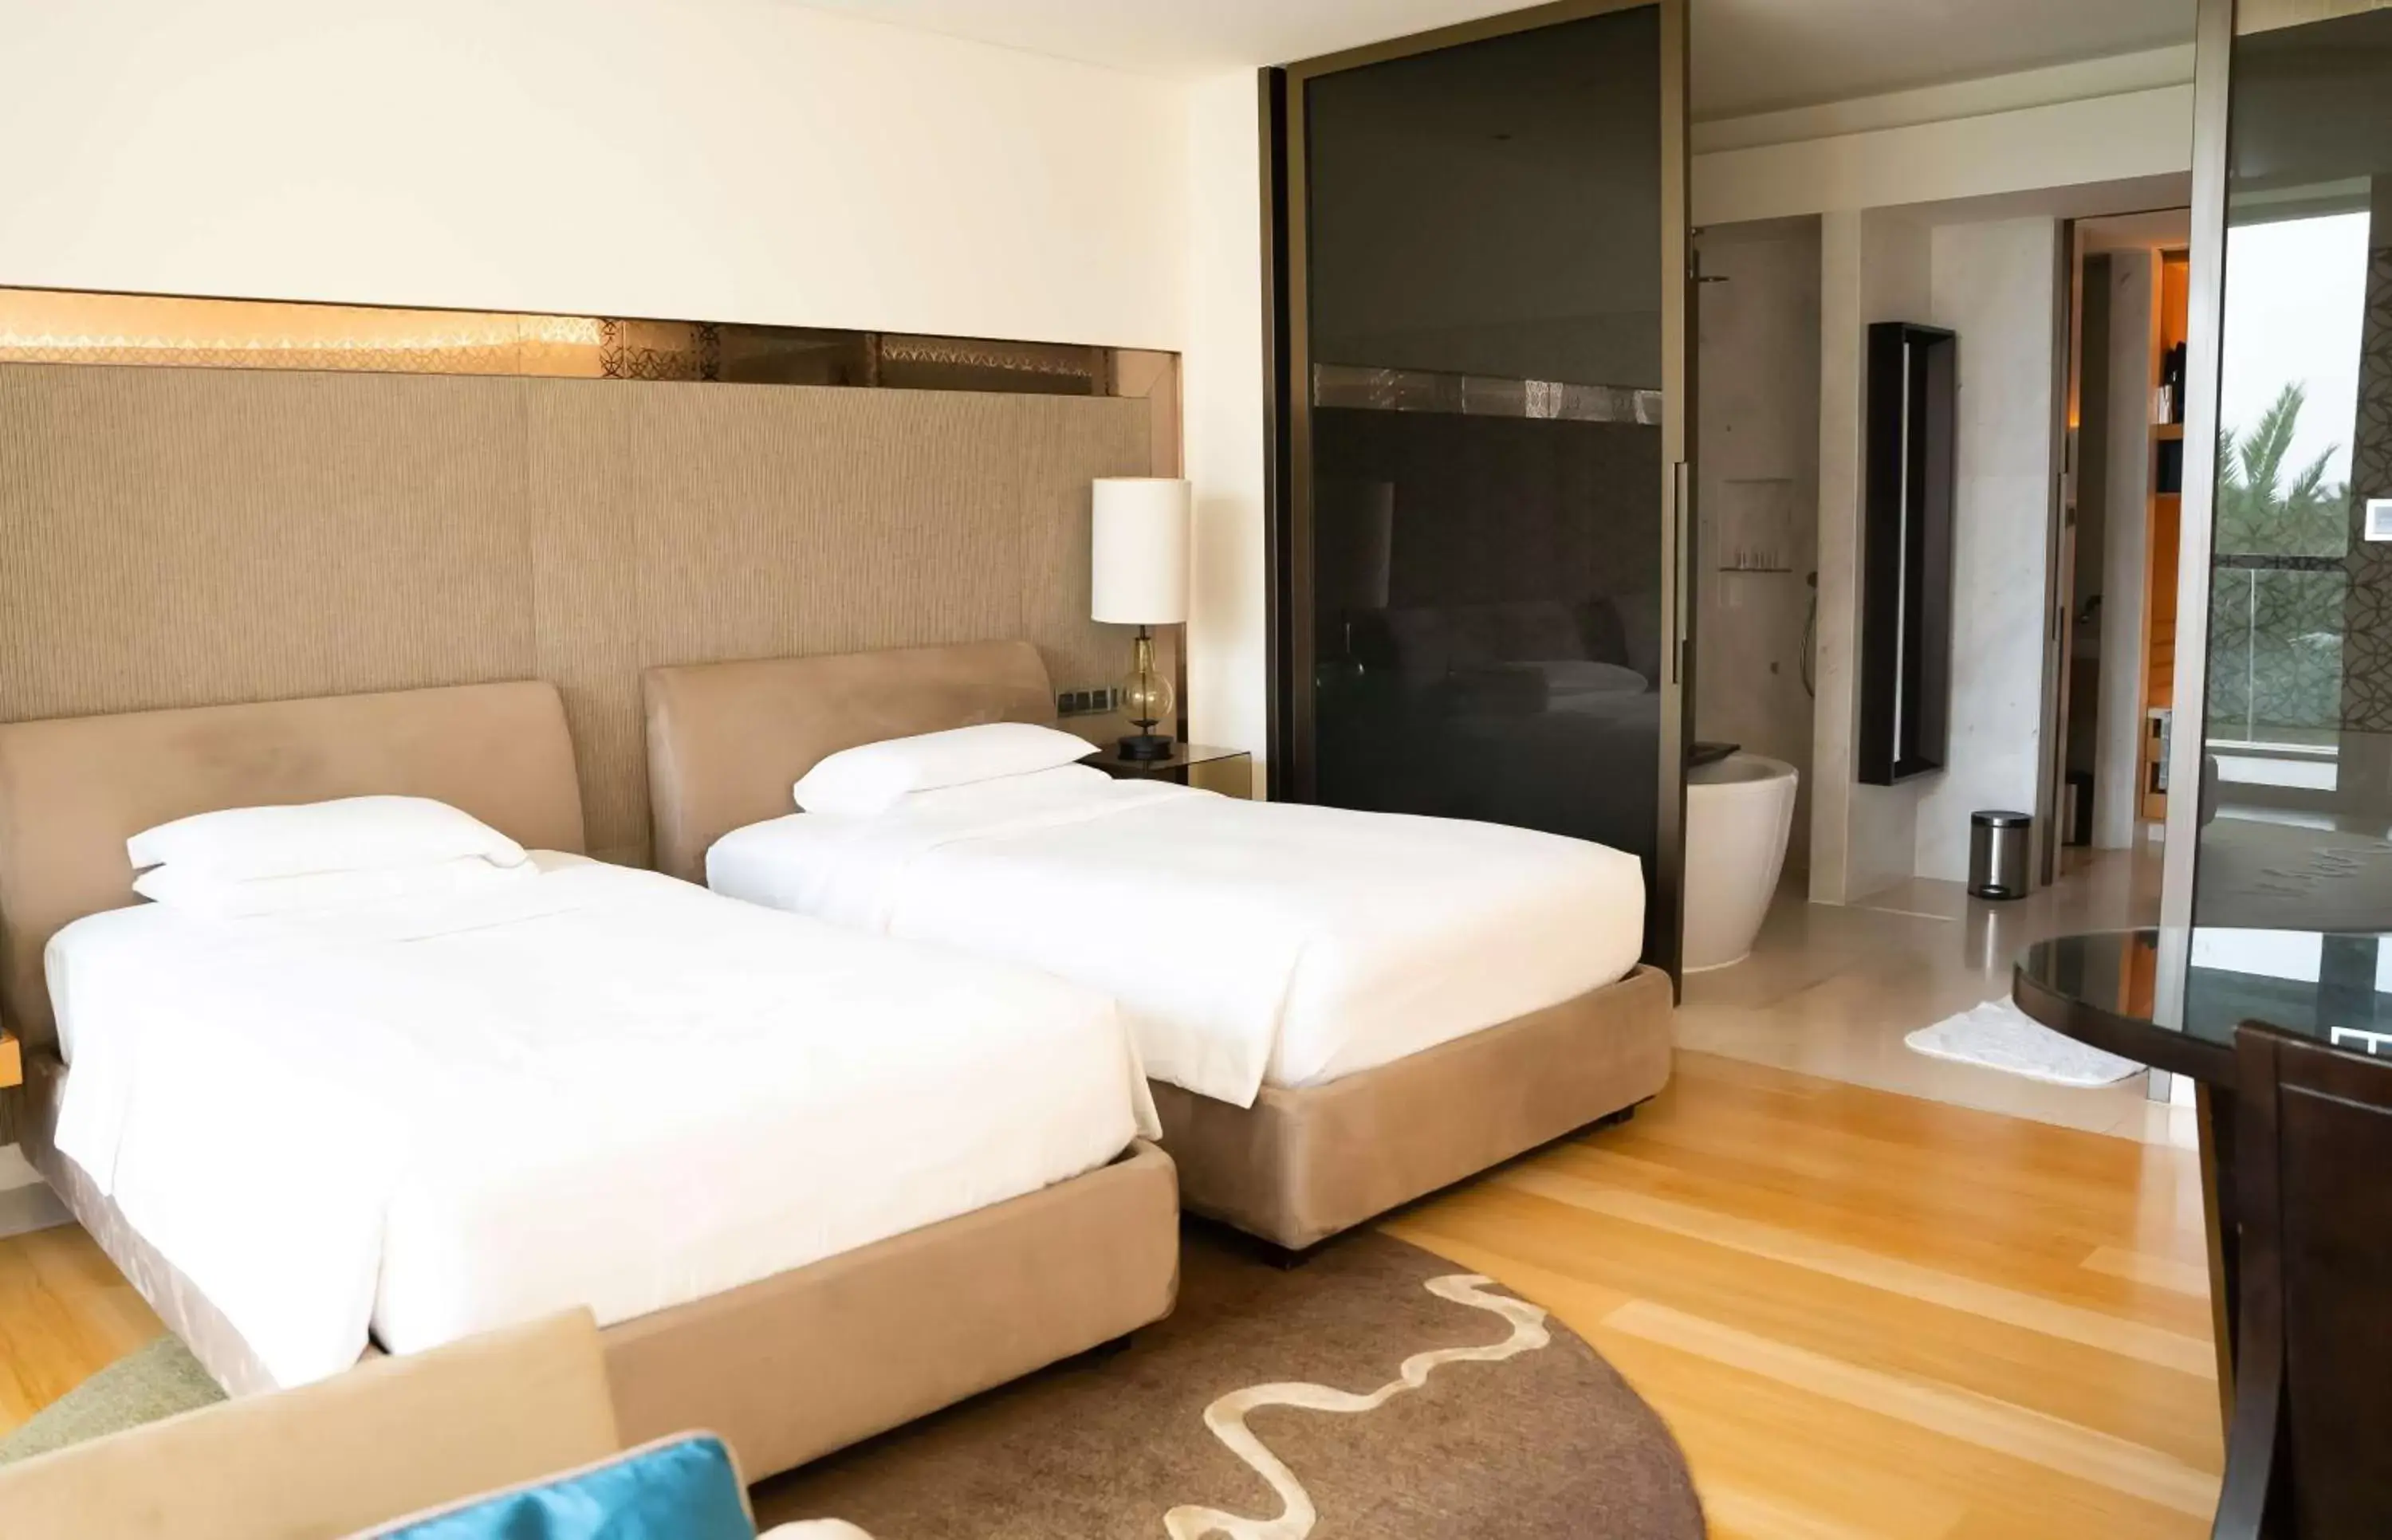 Bedroom, Bed in Park Hyatt Abu Dhabi Hotel and Villas